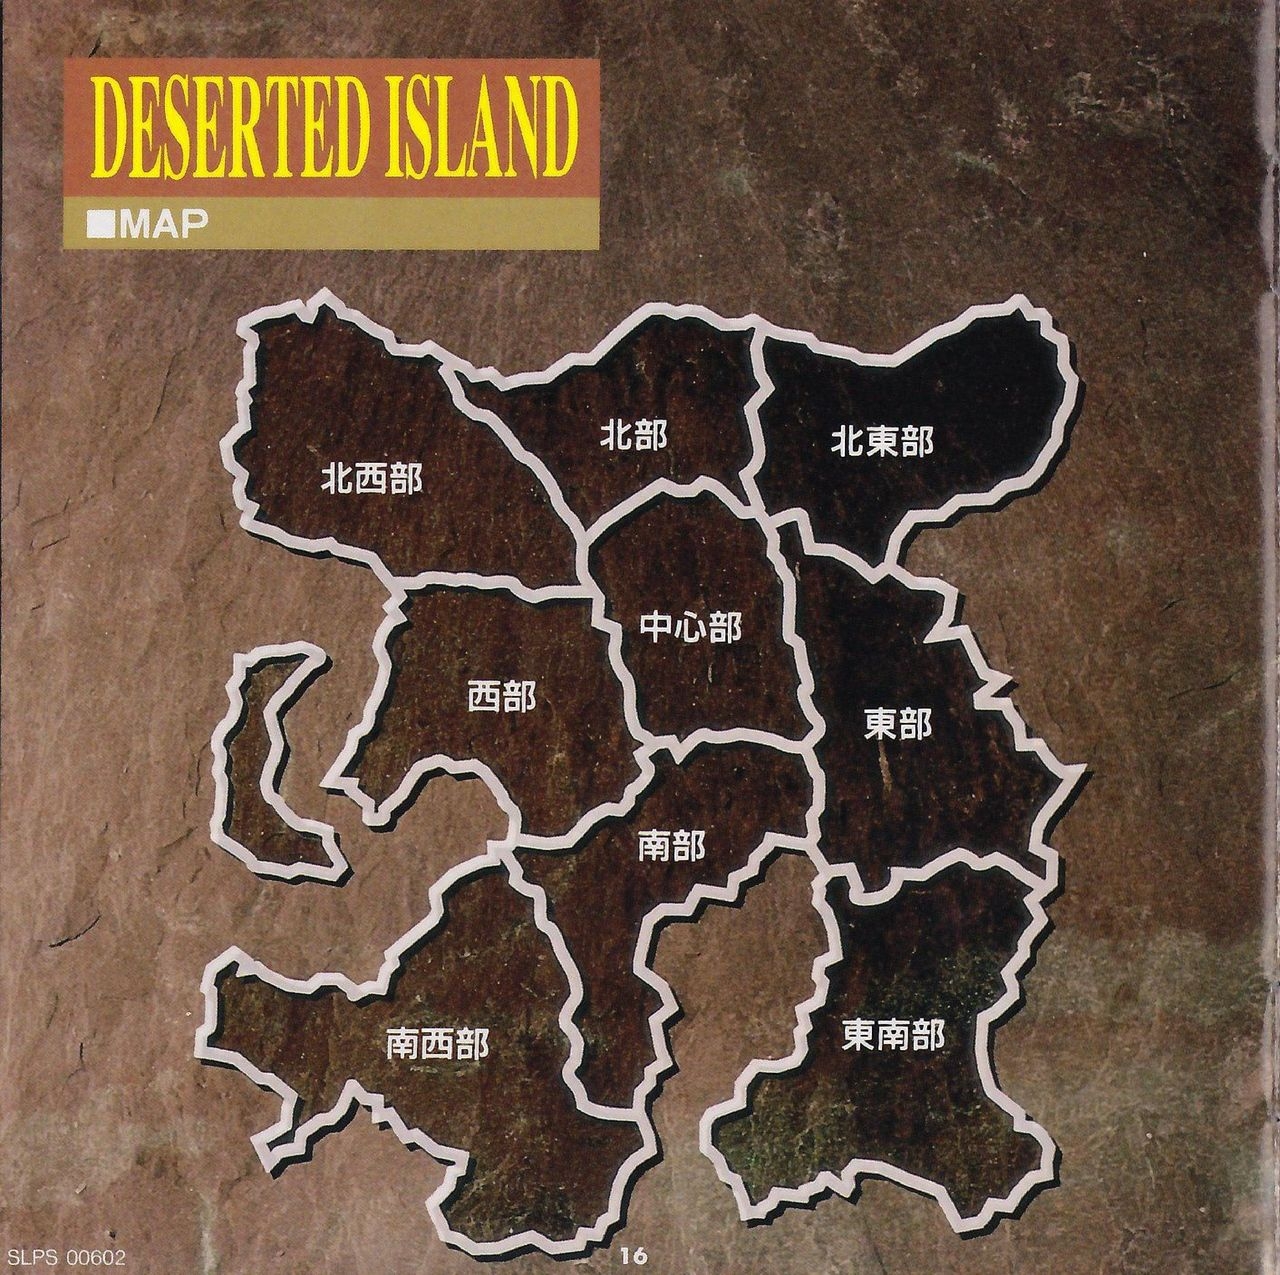 [KSS] Deserted Island - Manual 21